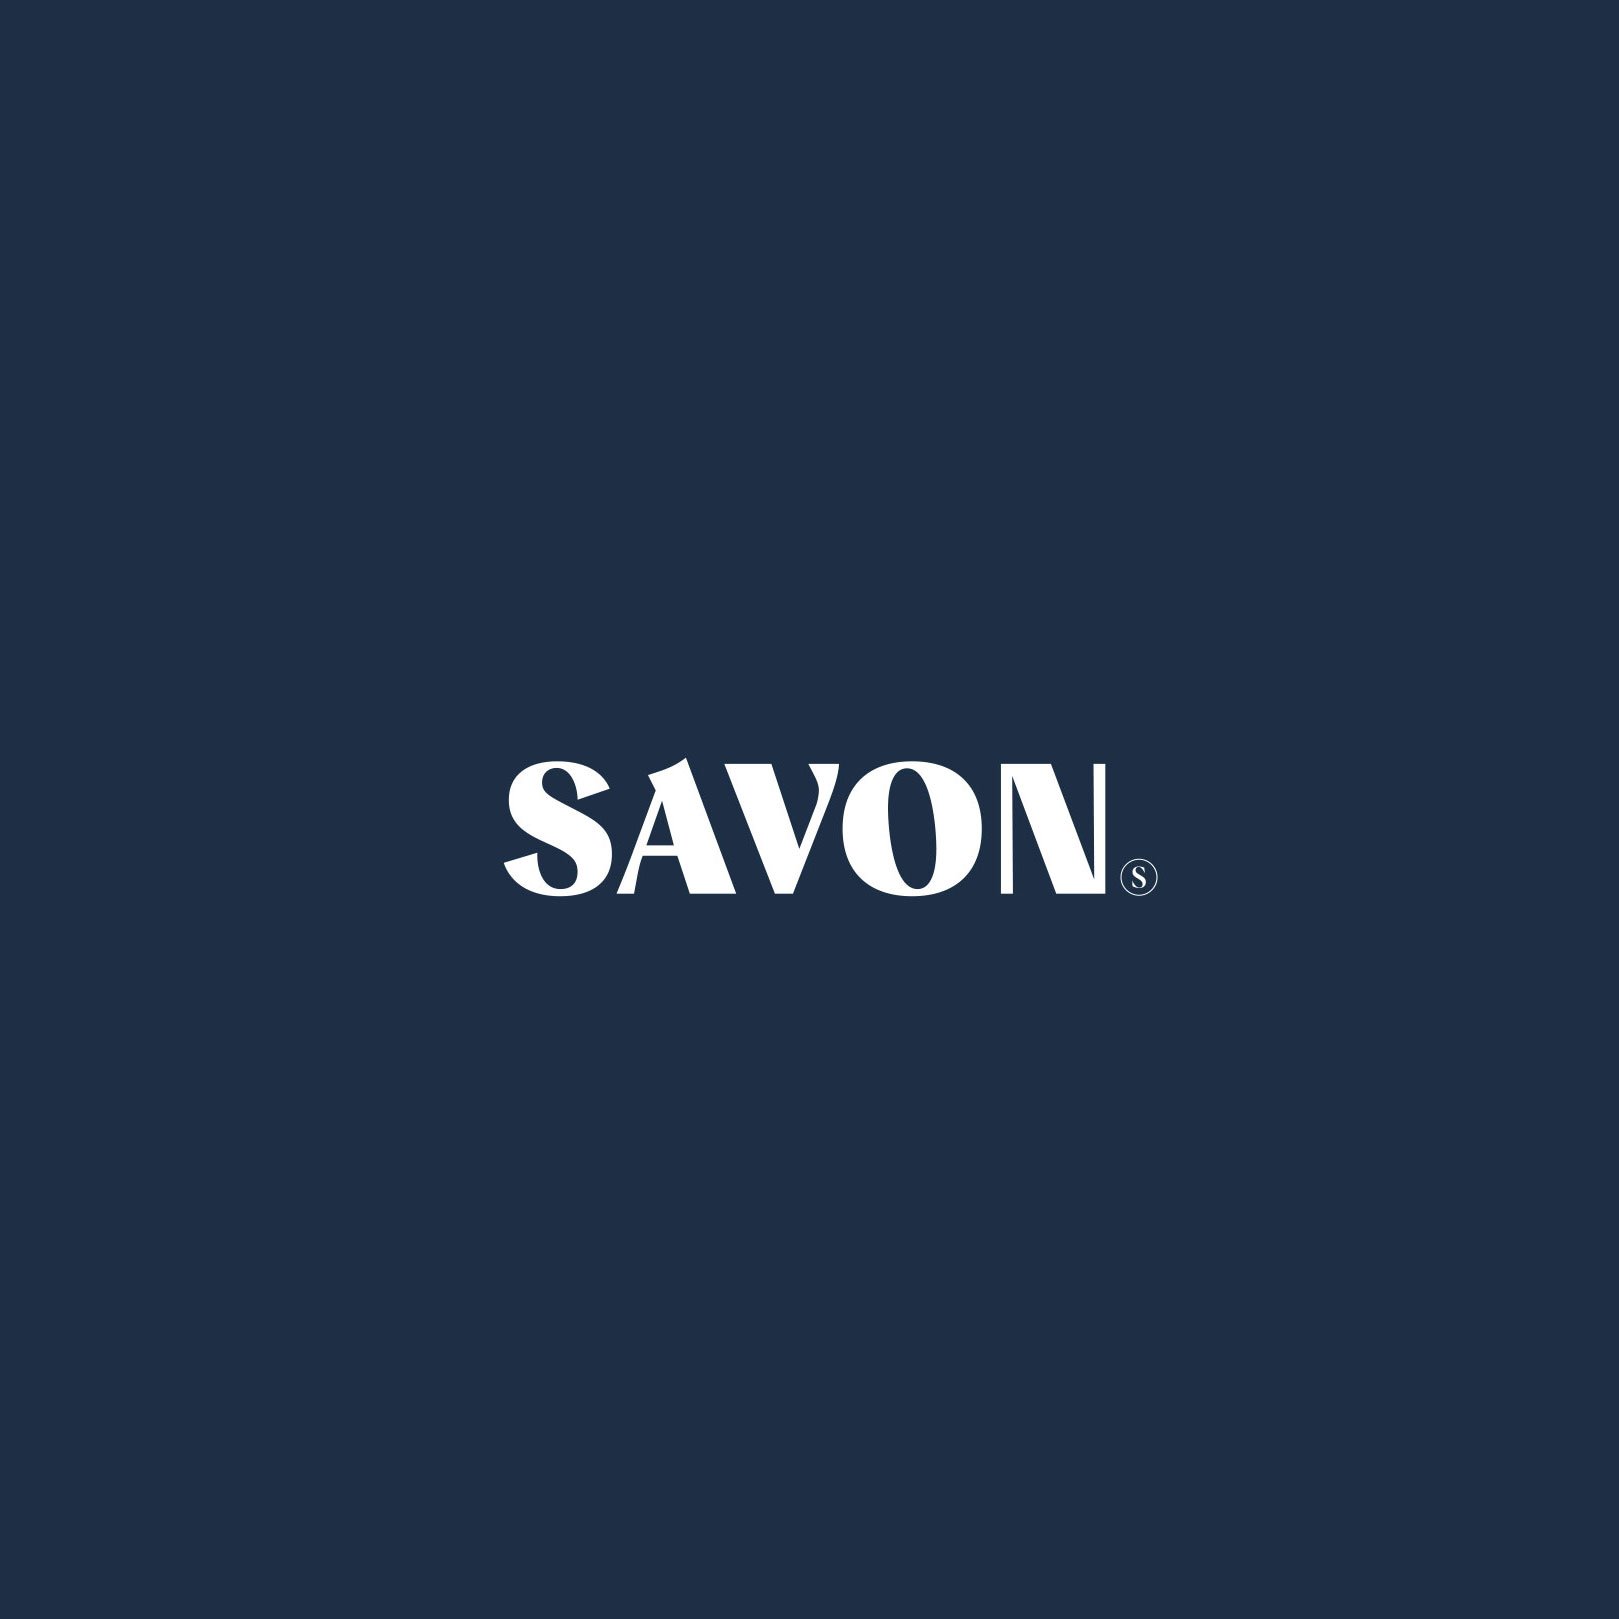 Savon_logo.jpg